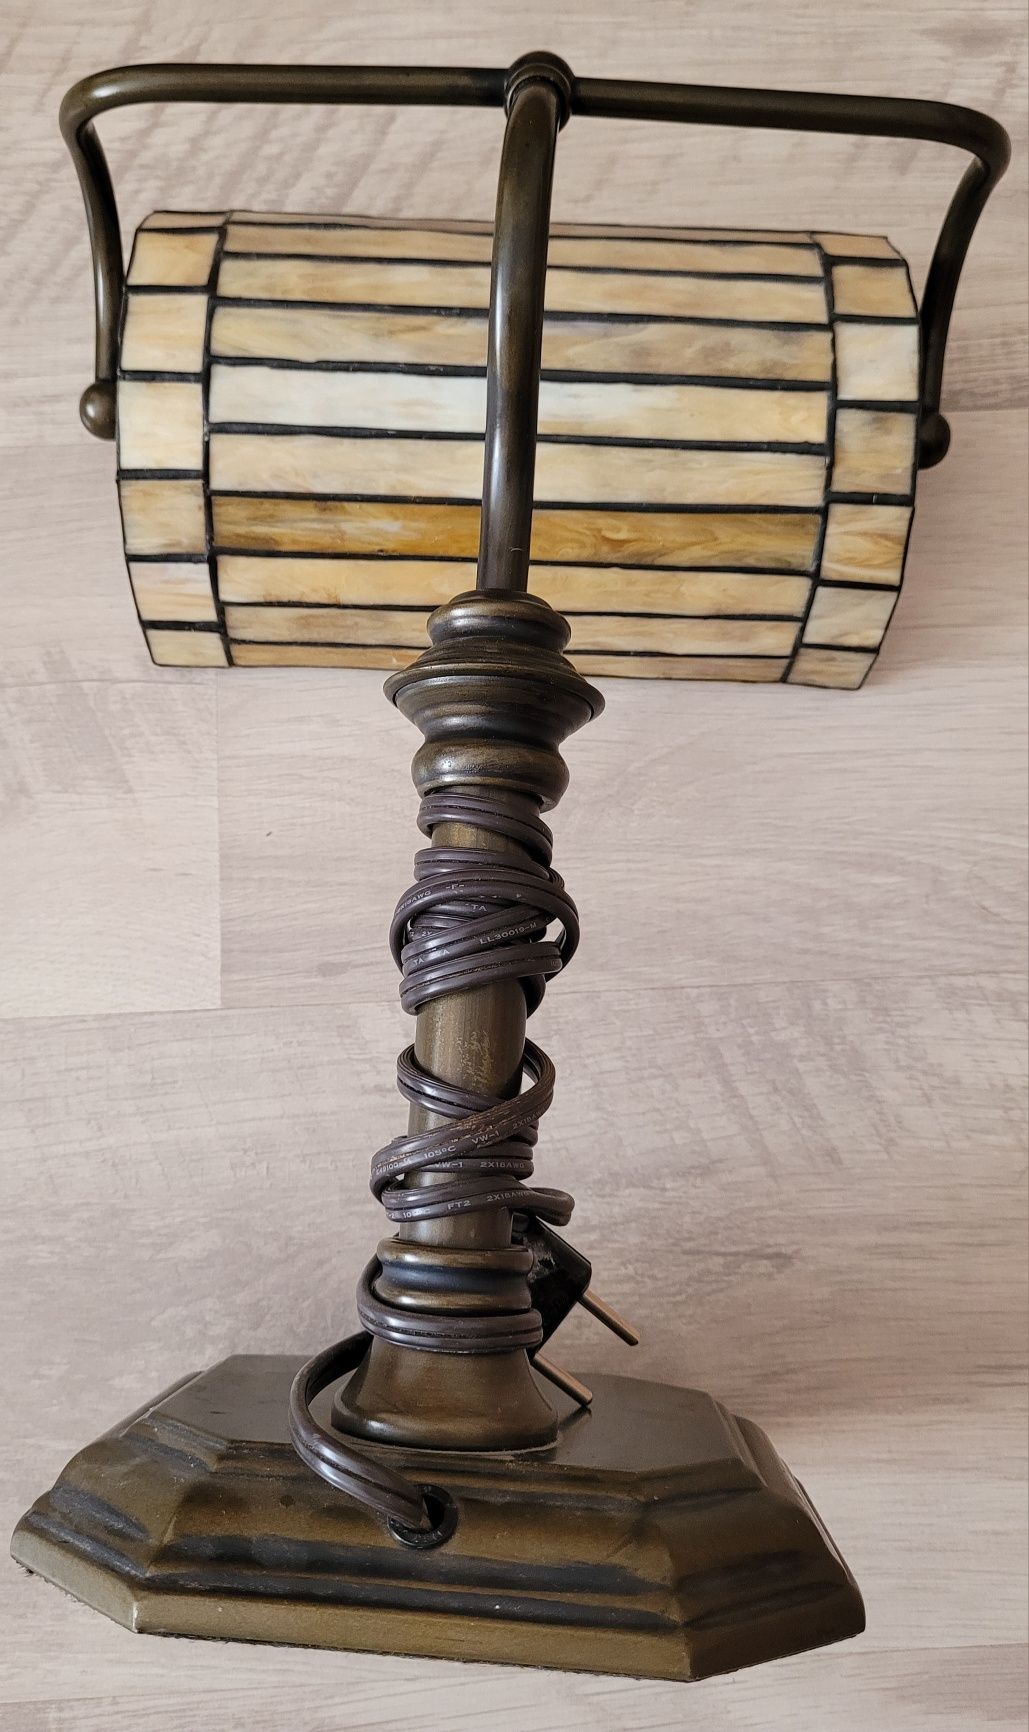 Лампа Unbranded Vintage Portable
Lamp